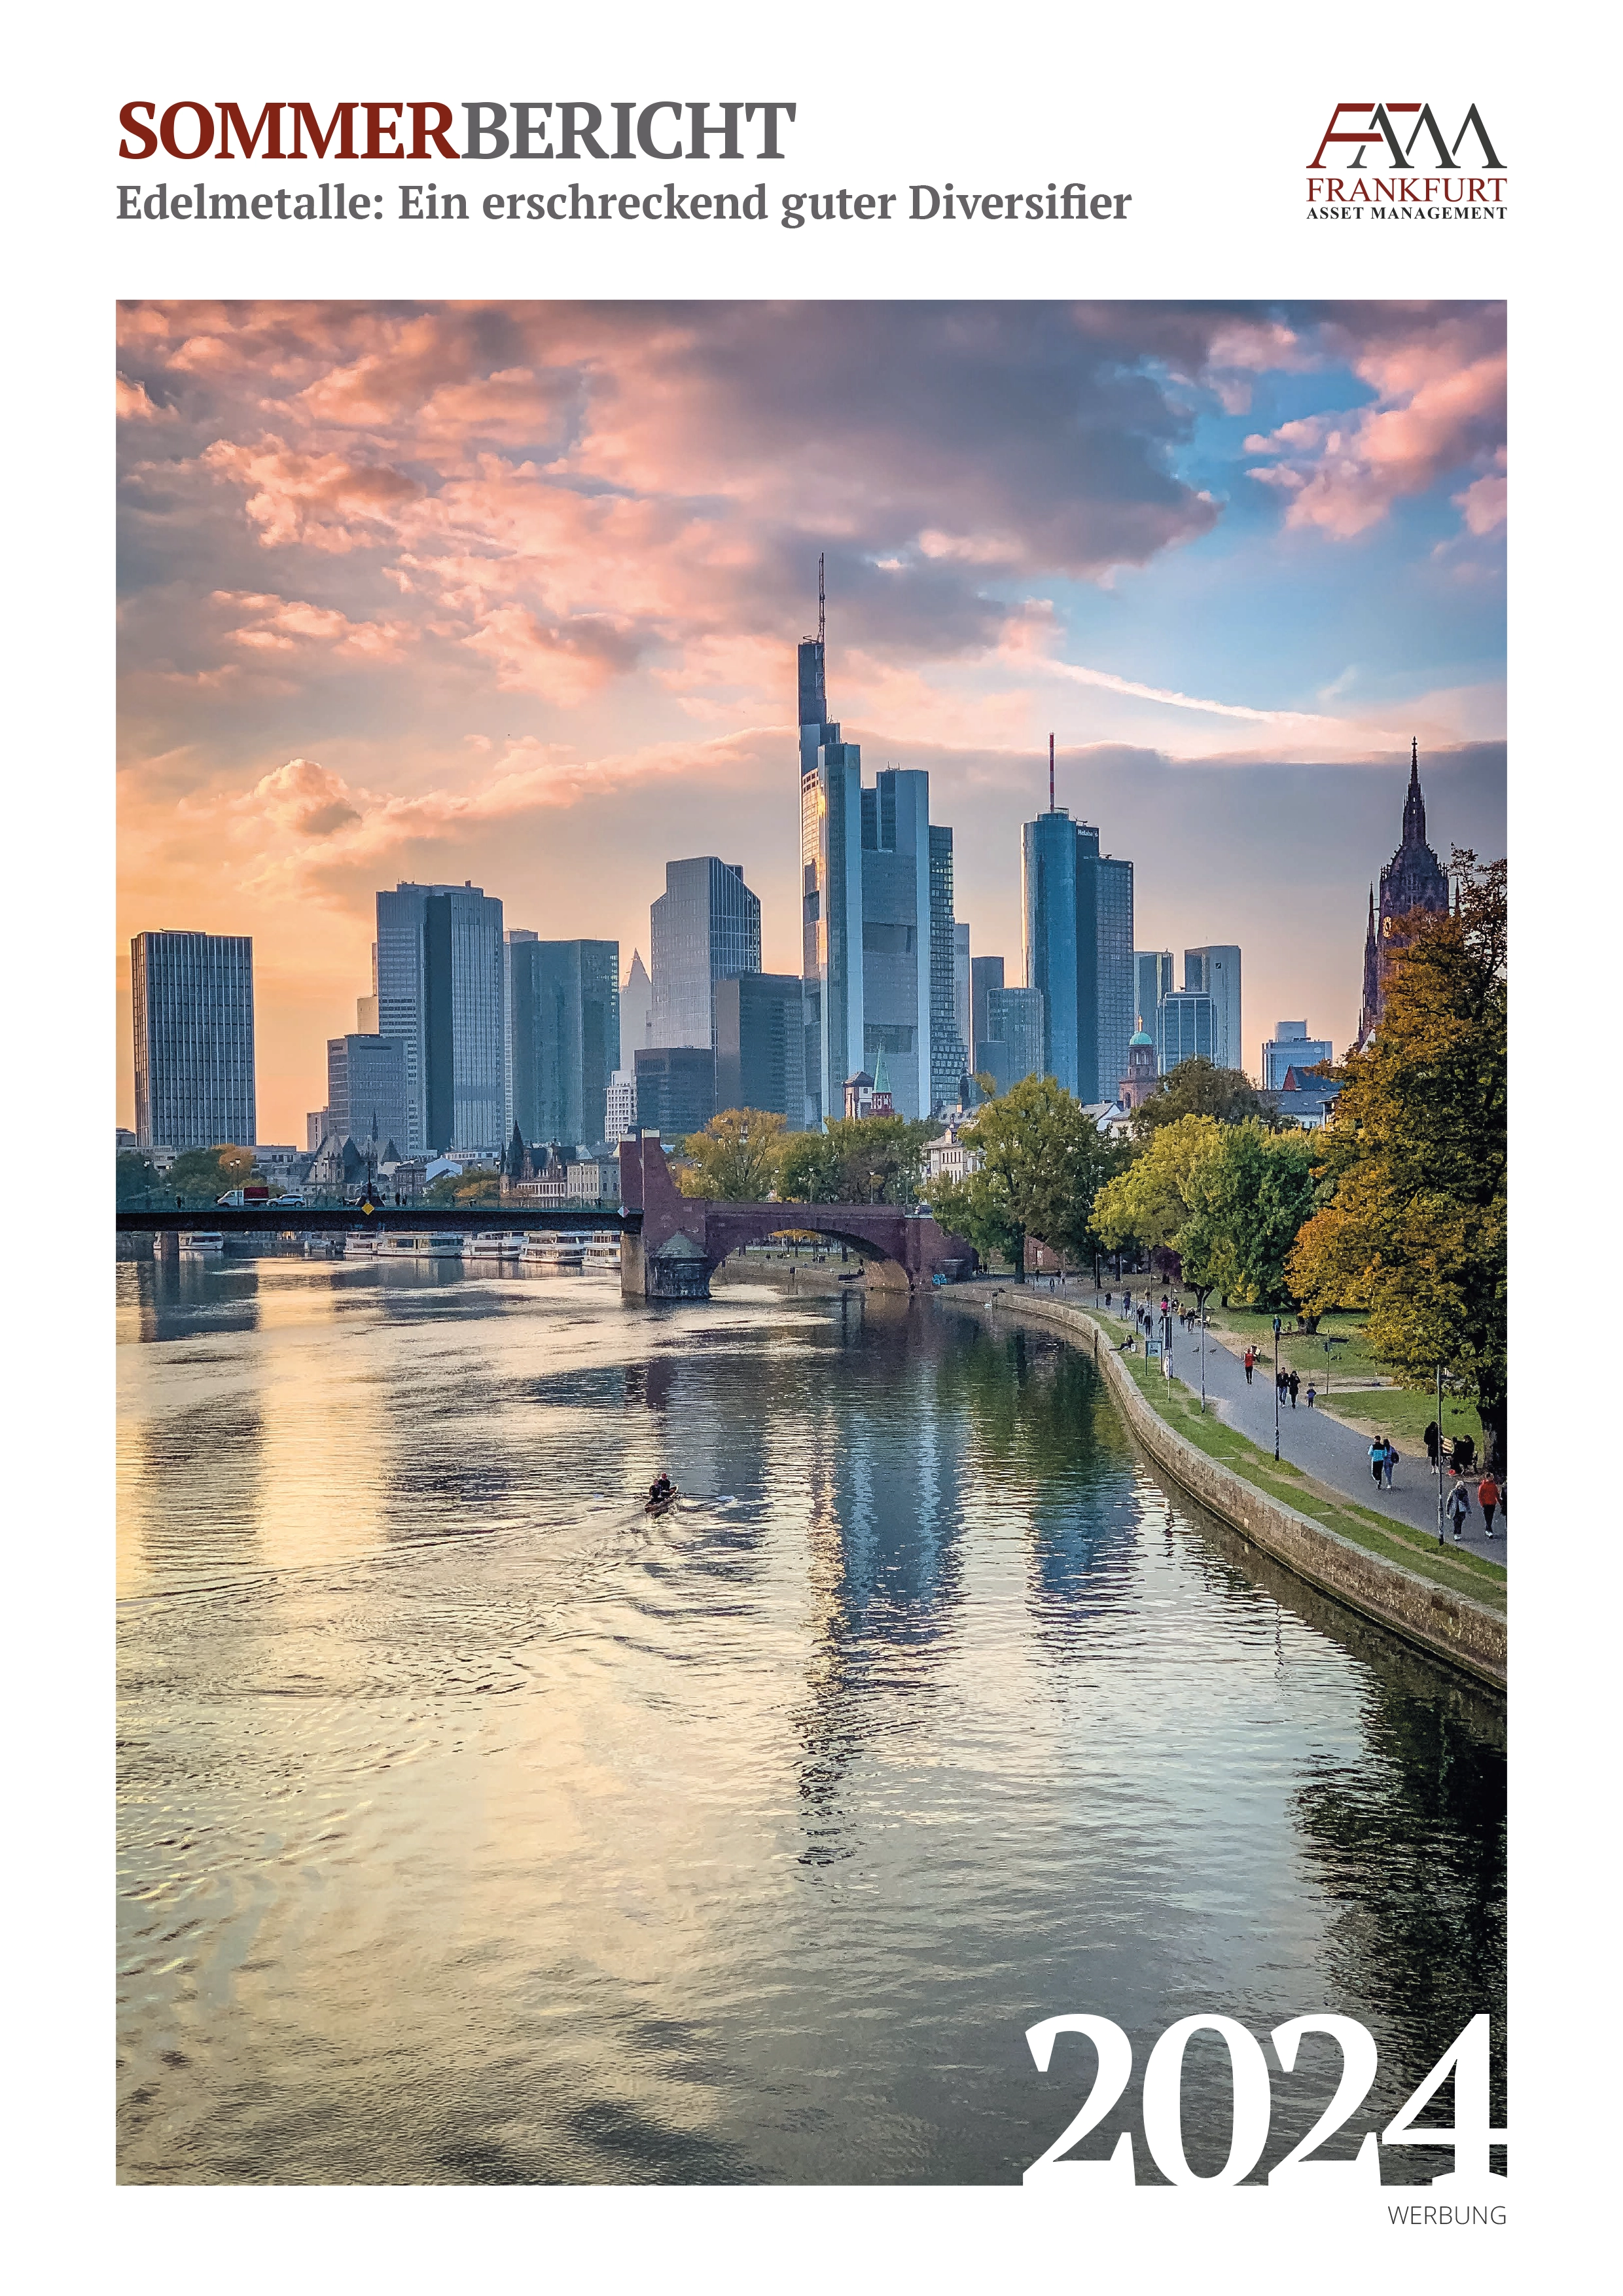 Frankfurt Asset Management Quartalsbericht - Sommerbericht 2024